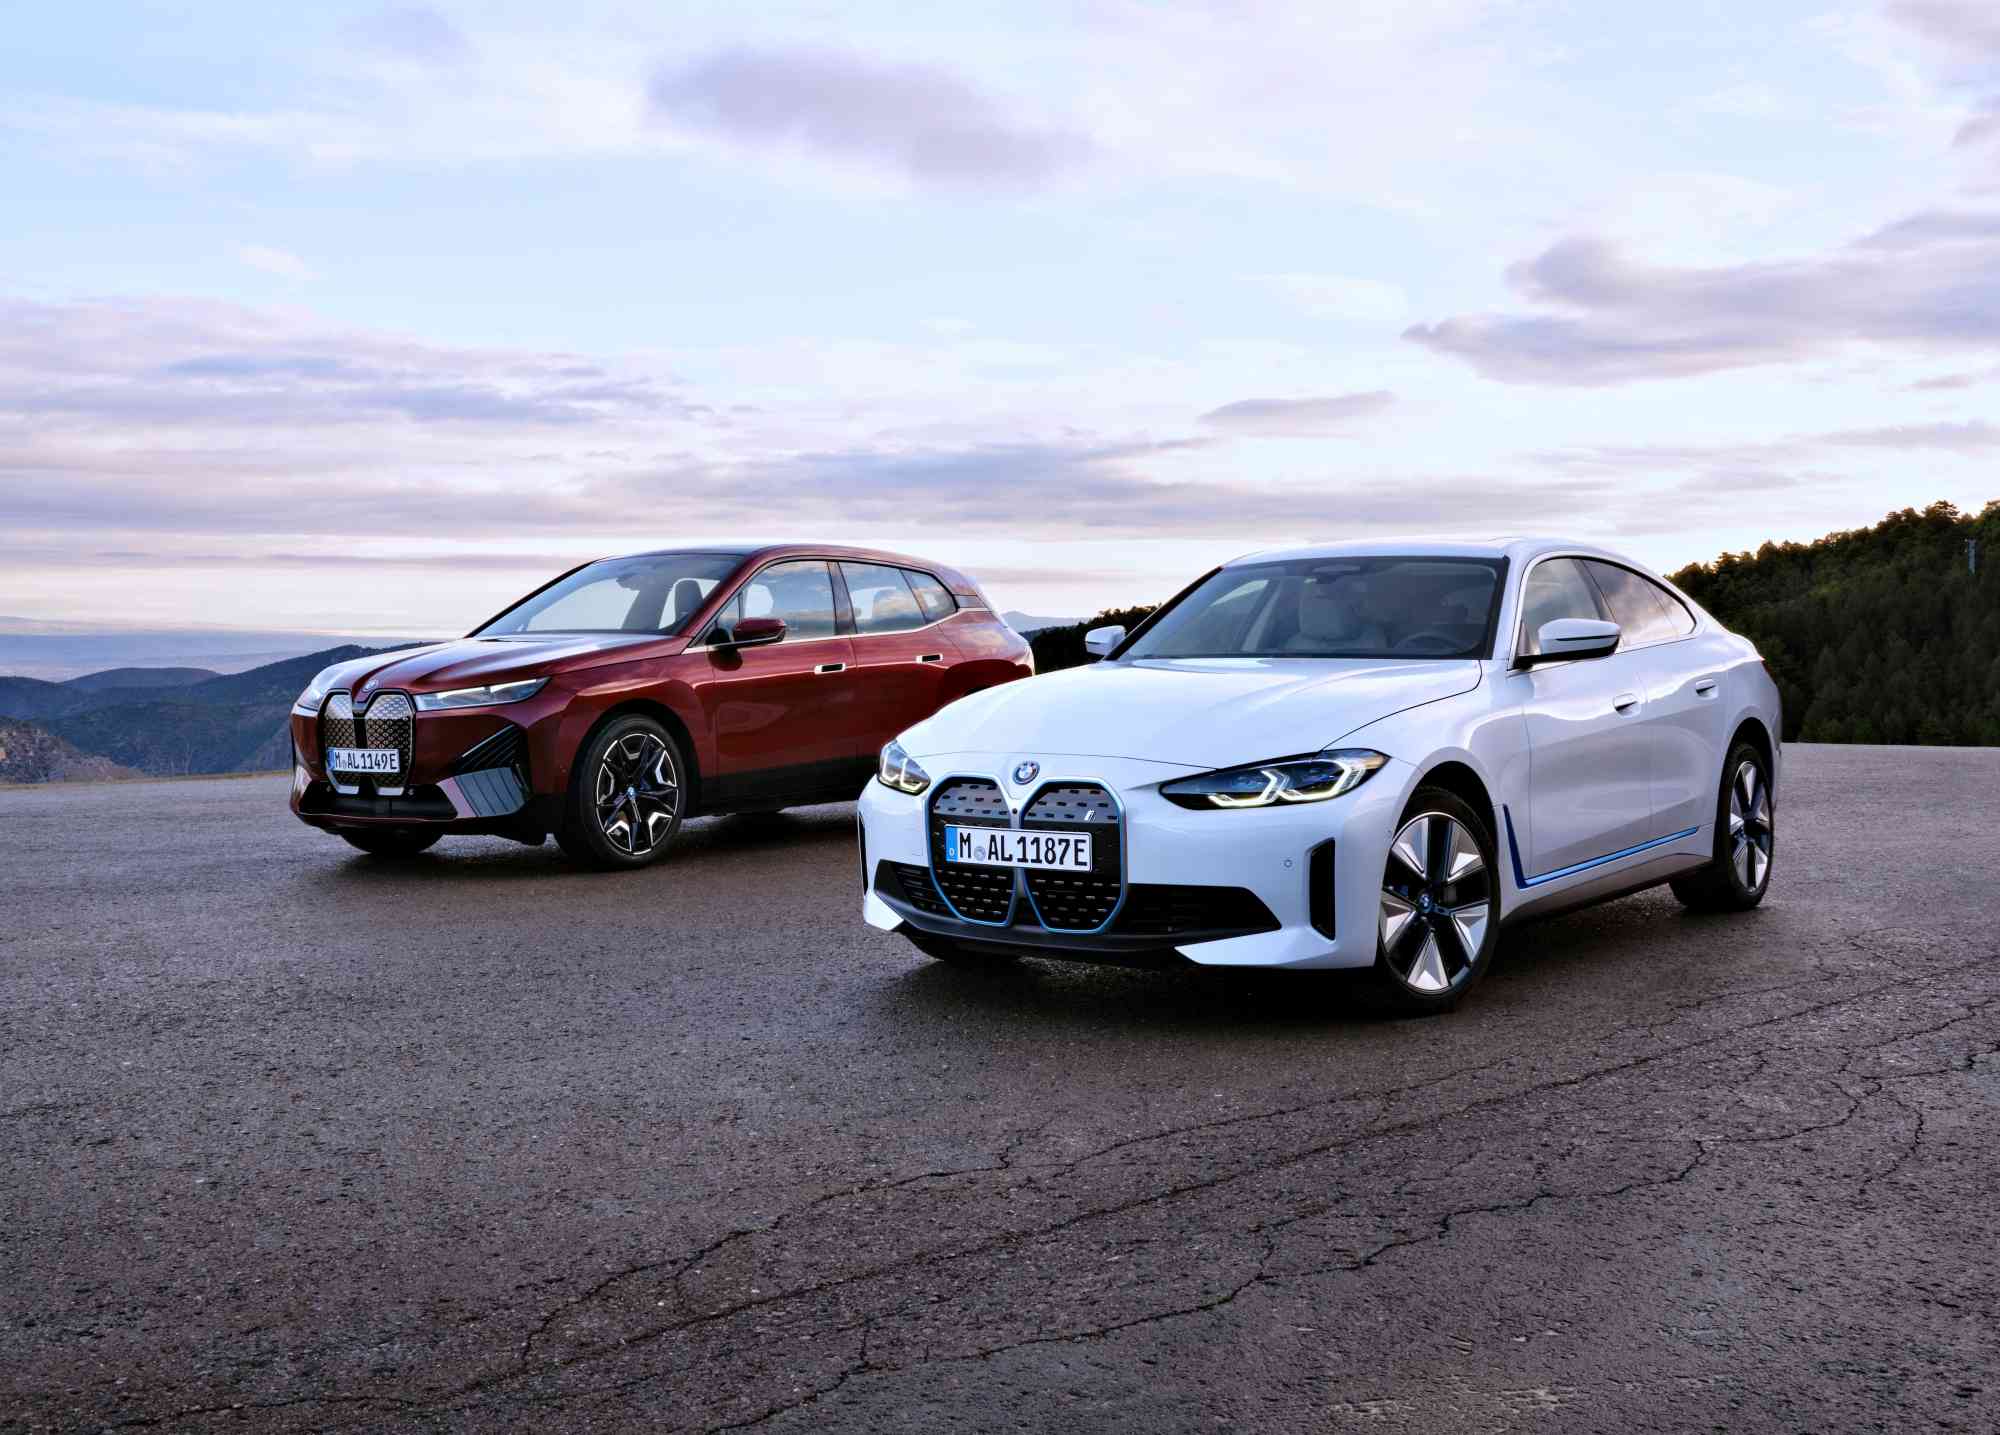 BMW稱霸6月台灣豪華進口車市場奪下豪華品牌與豪華電動車雙料銷售冠軍寶座